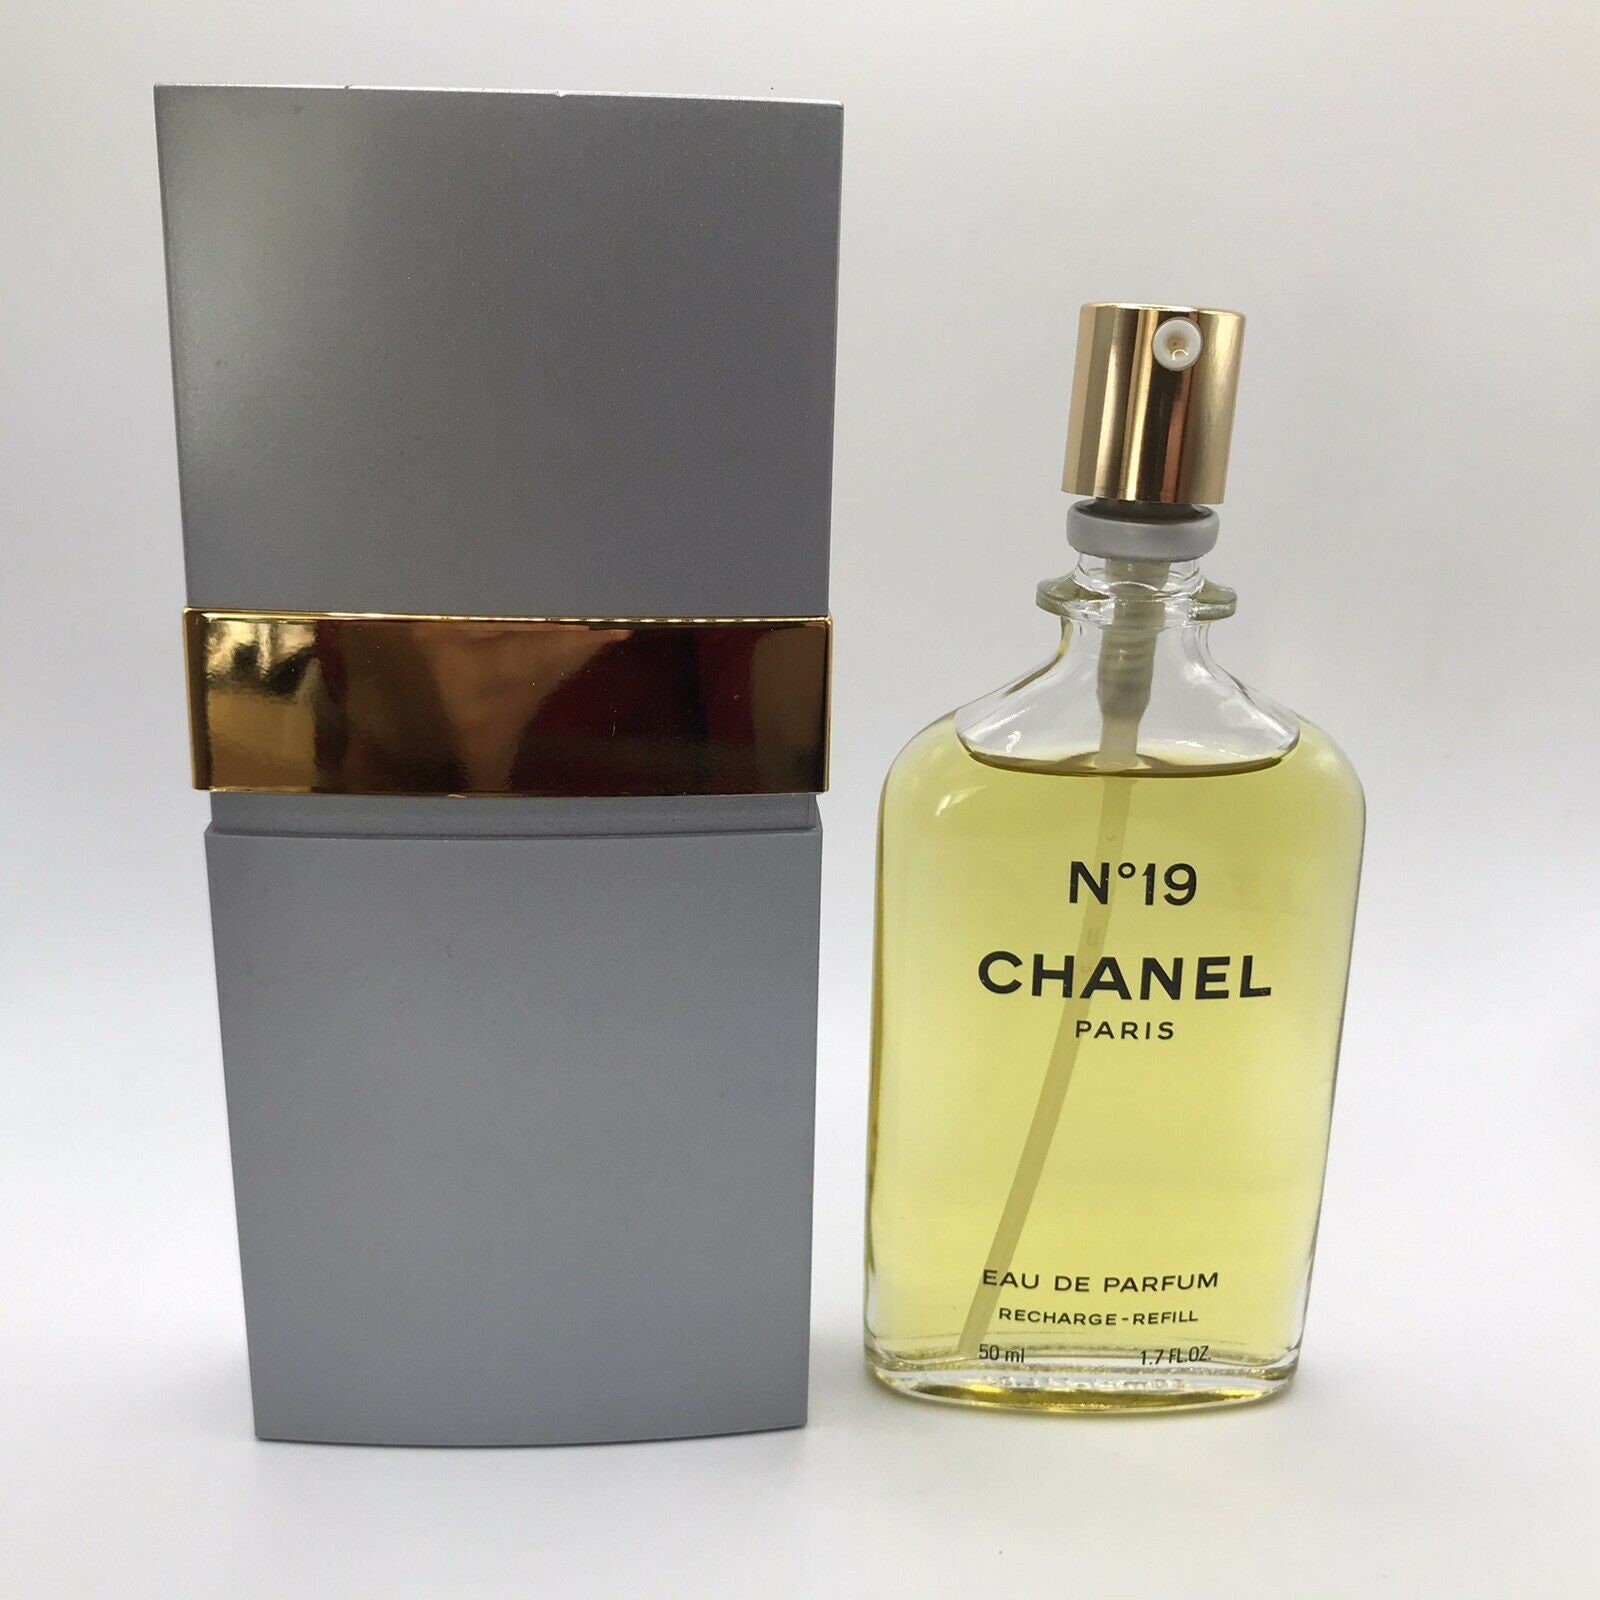 Chanel No 19 extrait 2 oz (M.M.). Rare vintage 1971 original